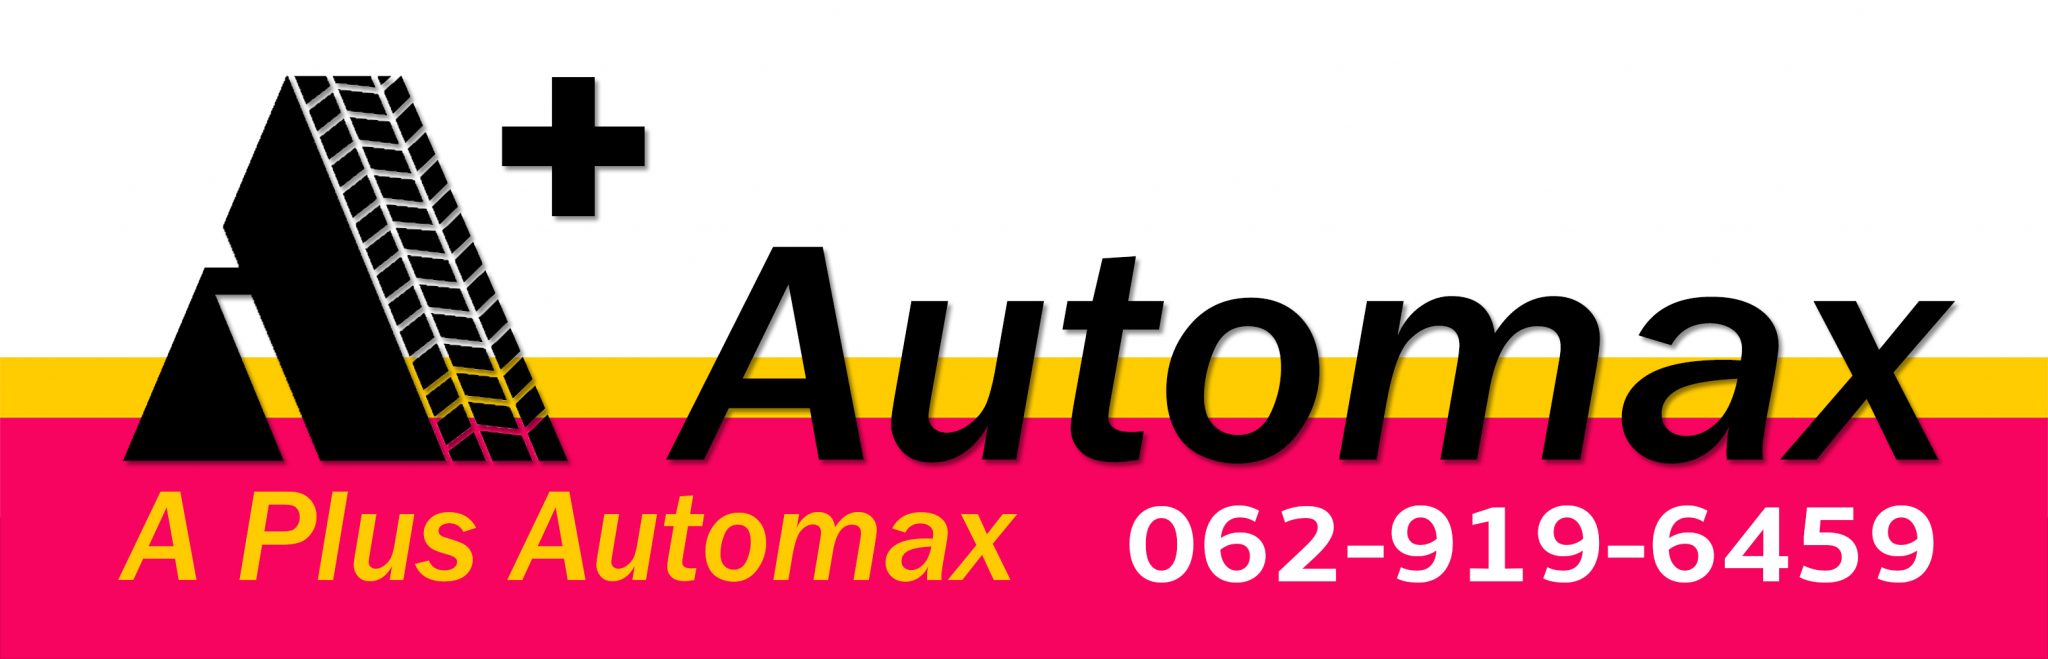 A Plus Automax